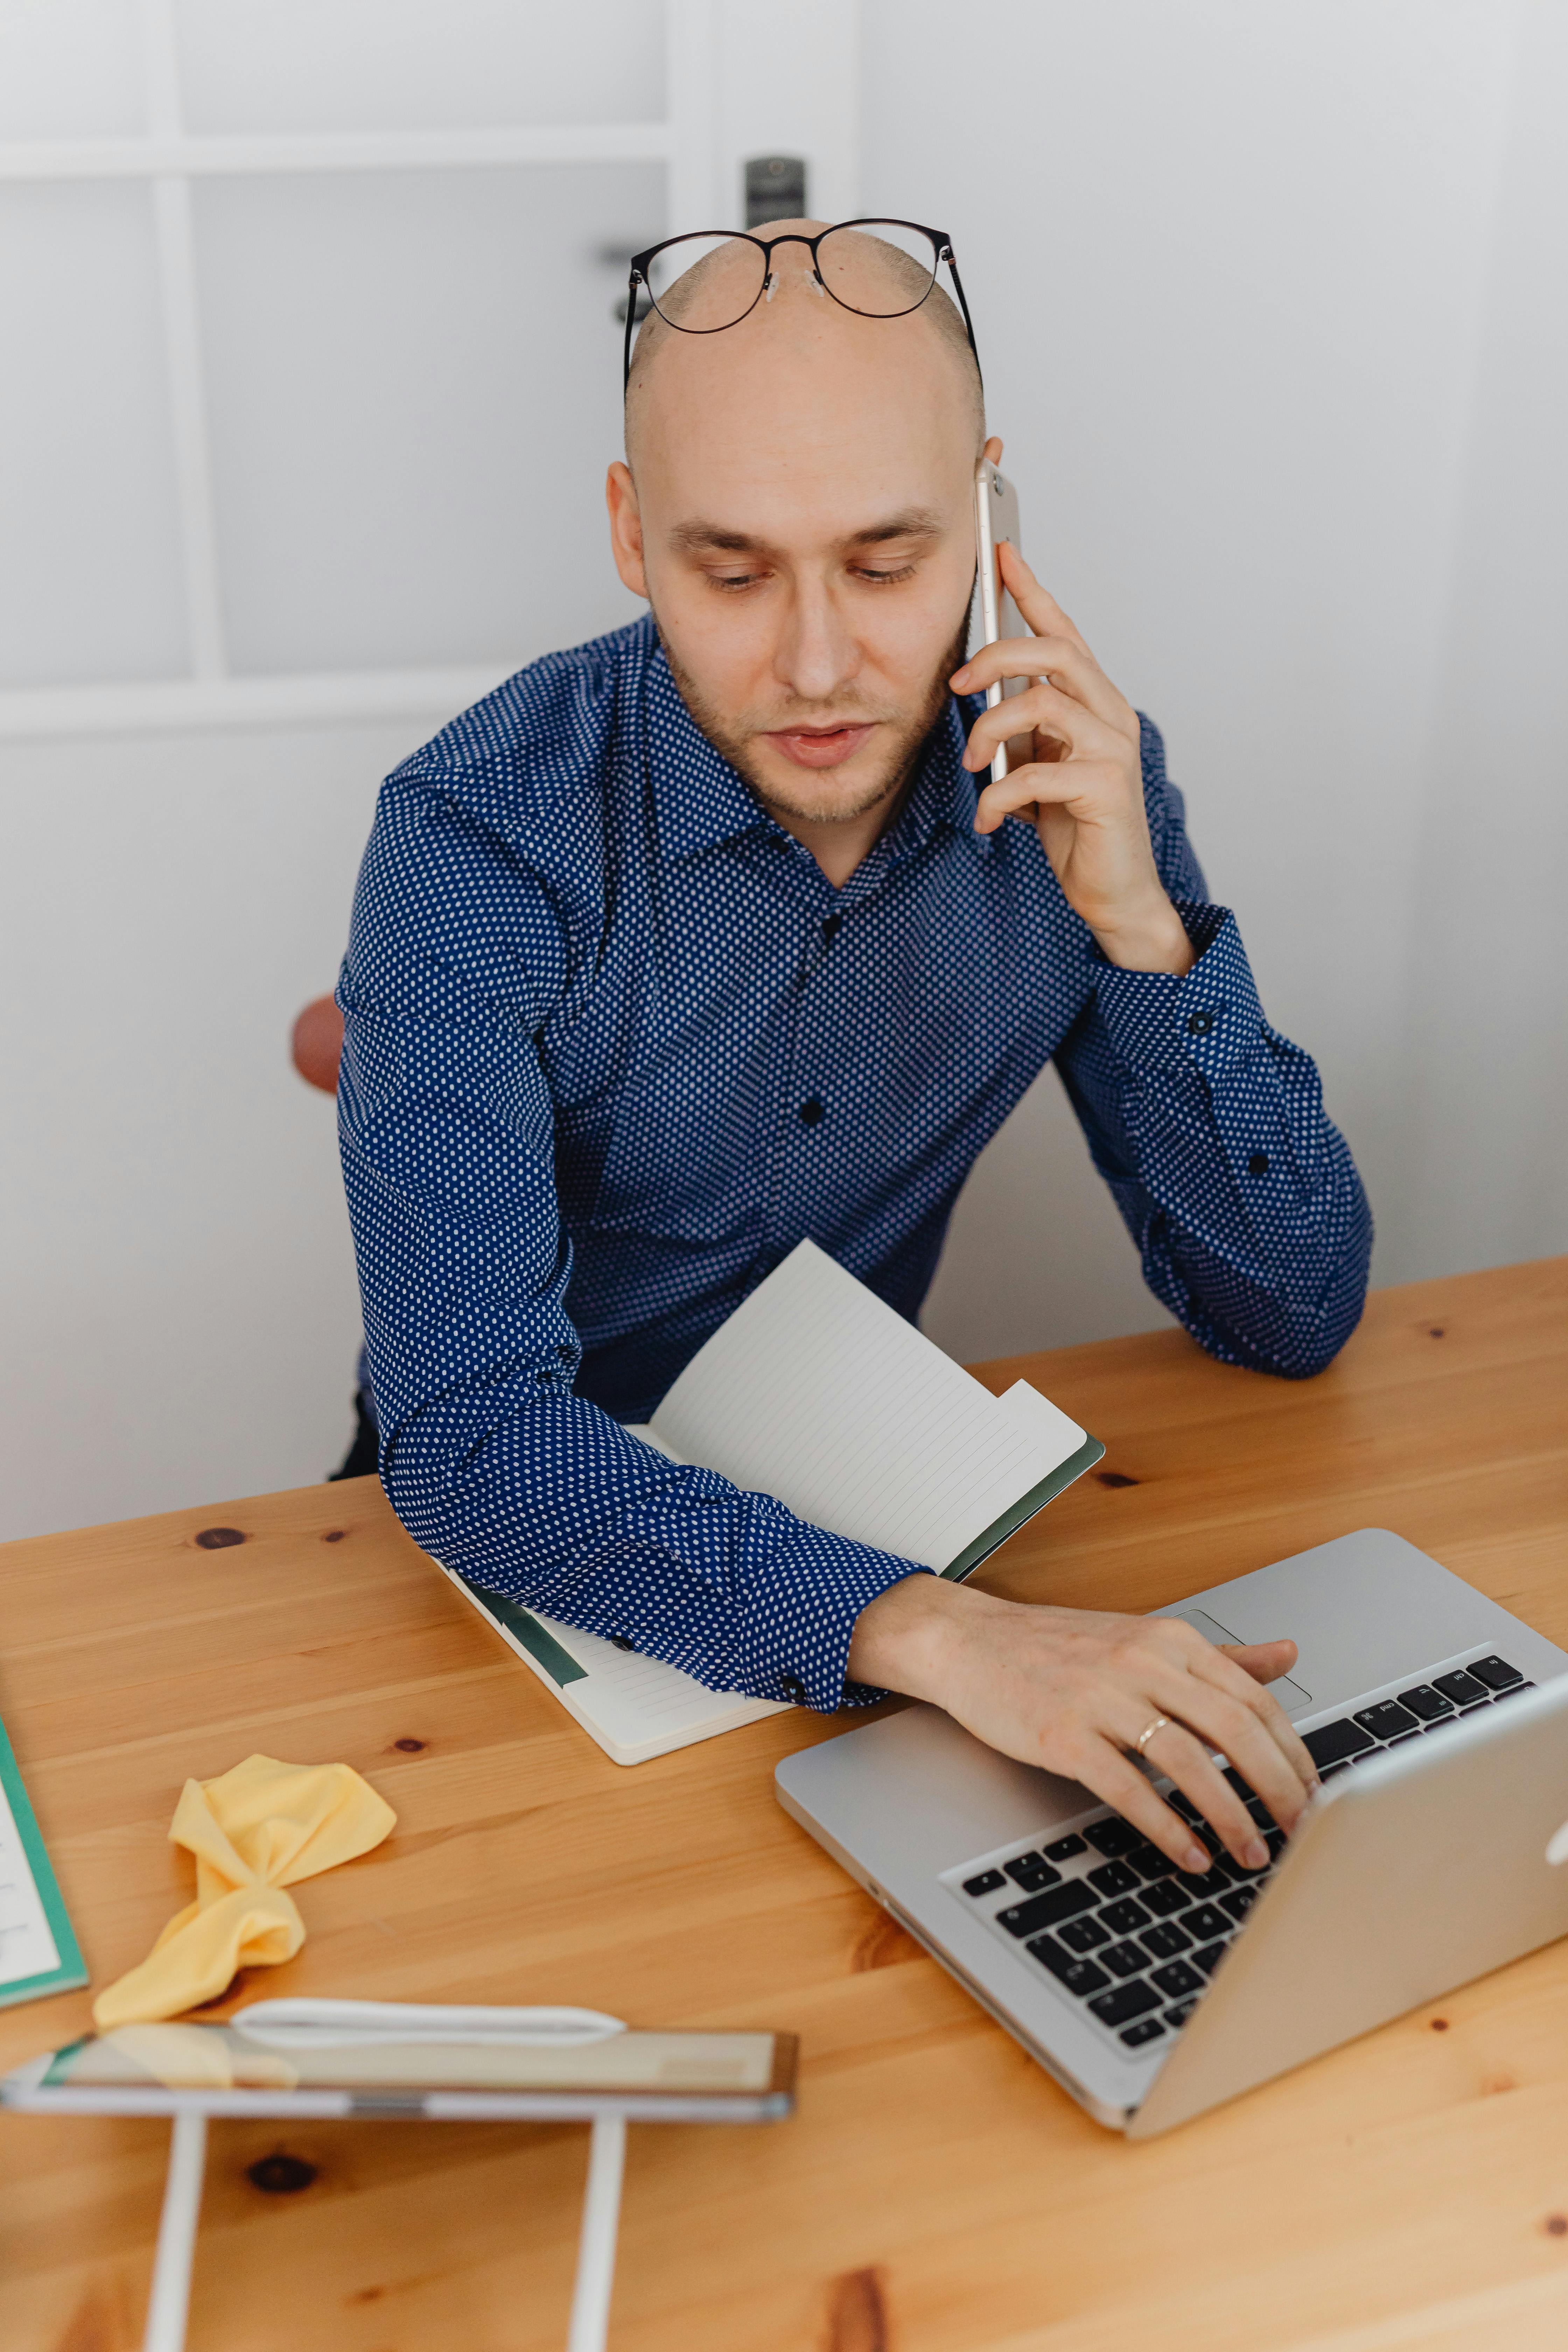 Ein formell gekleideter Mann führt ein Telefonat, während er an einem Laptop arbeitet | Quelle: Pexels